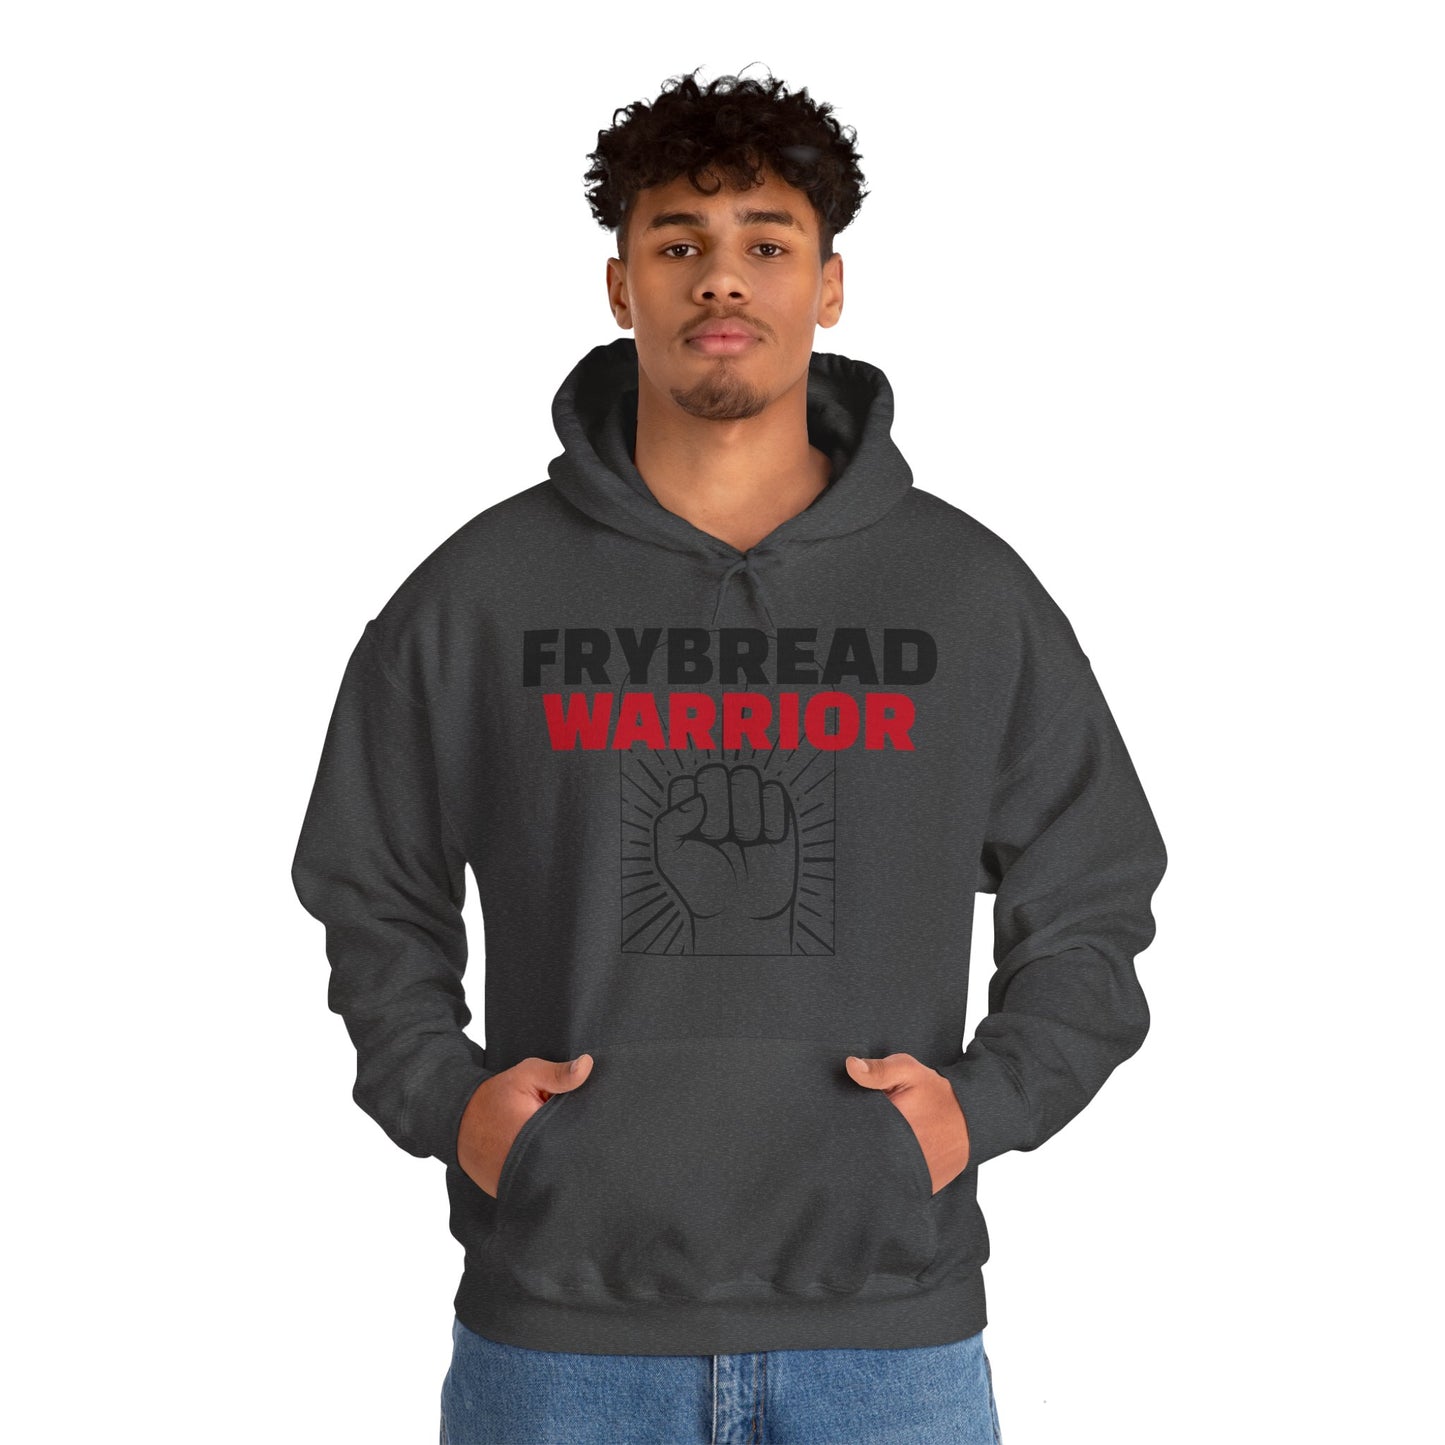 Frybread Warrior Hooded Sweatshirt